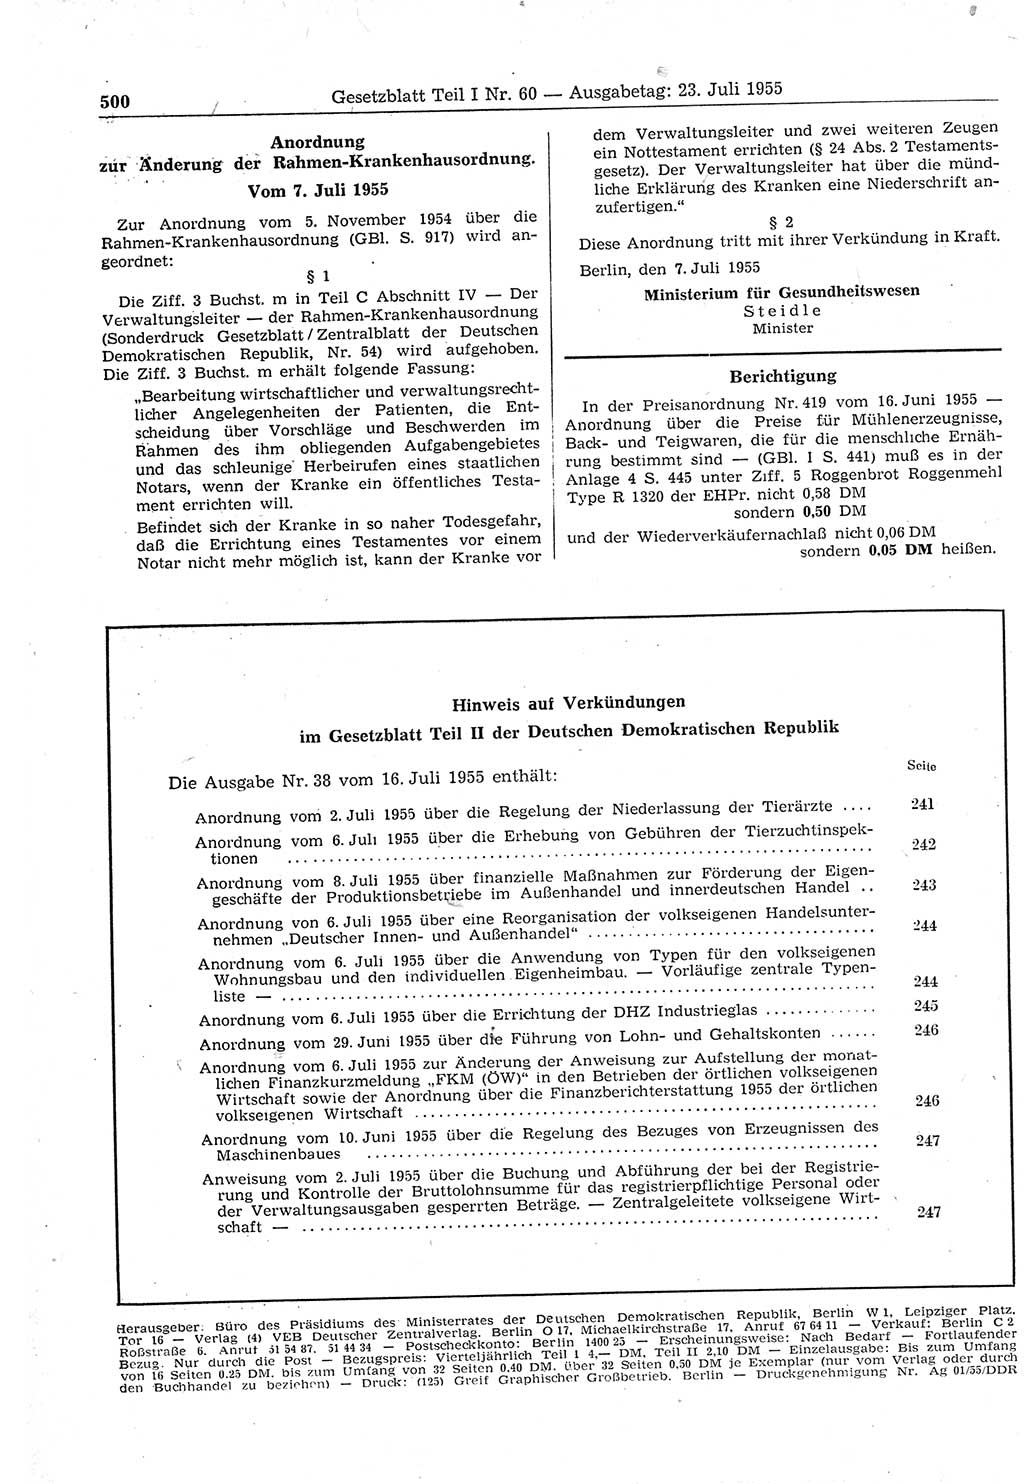 Gesetzblatt (GBl.) der Deutschen Demokratischen Republik (DDR) Teil Ⅰ 1955, Seite 500 (GBl. DDR Ⅰ 1955, S. 500)